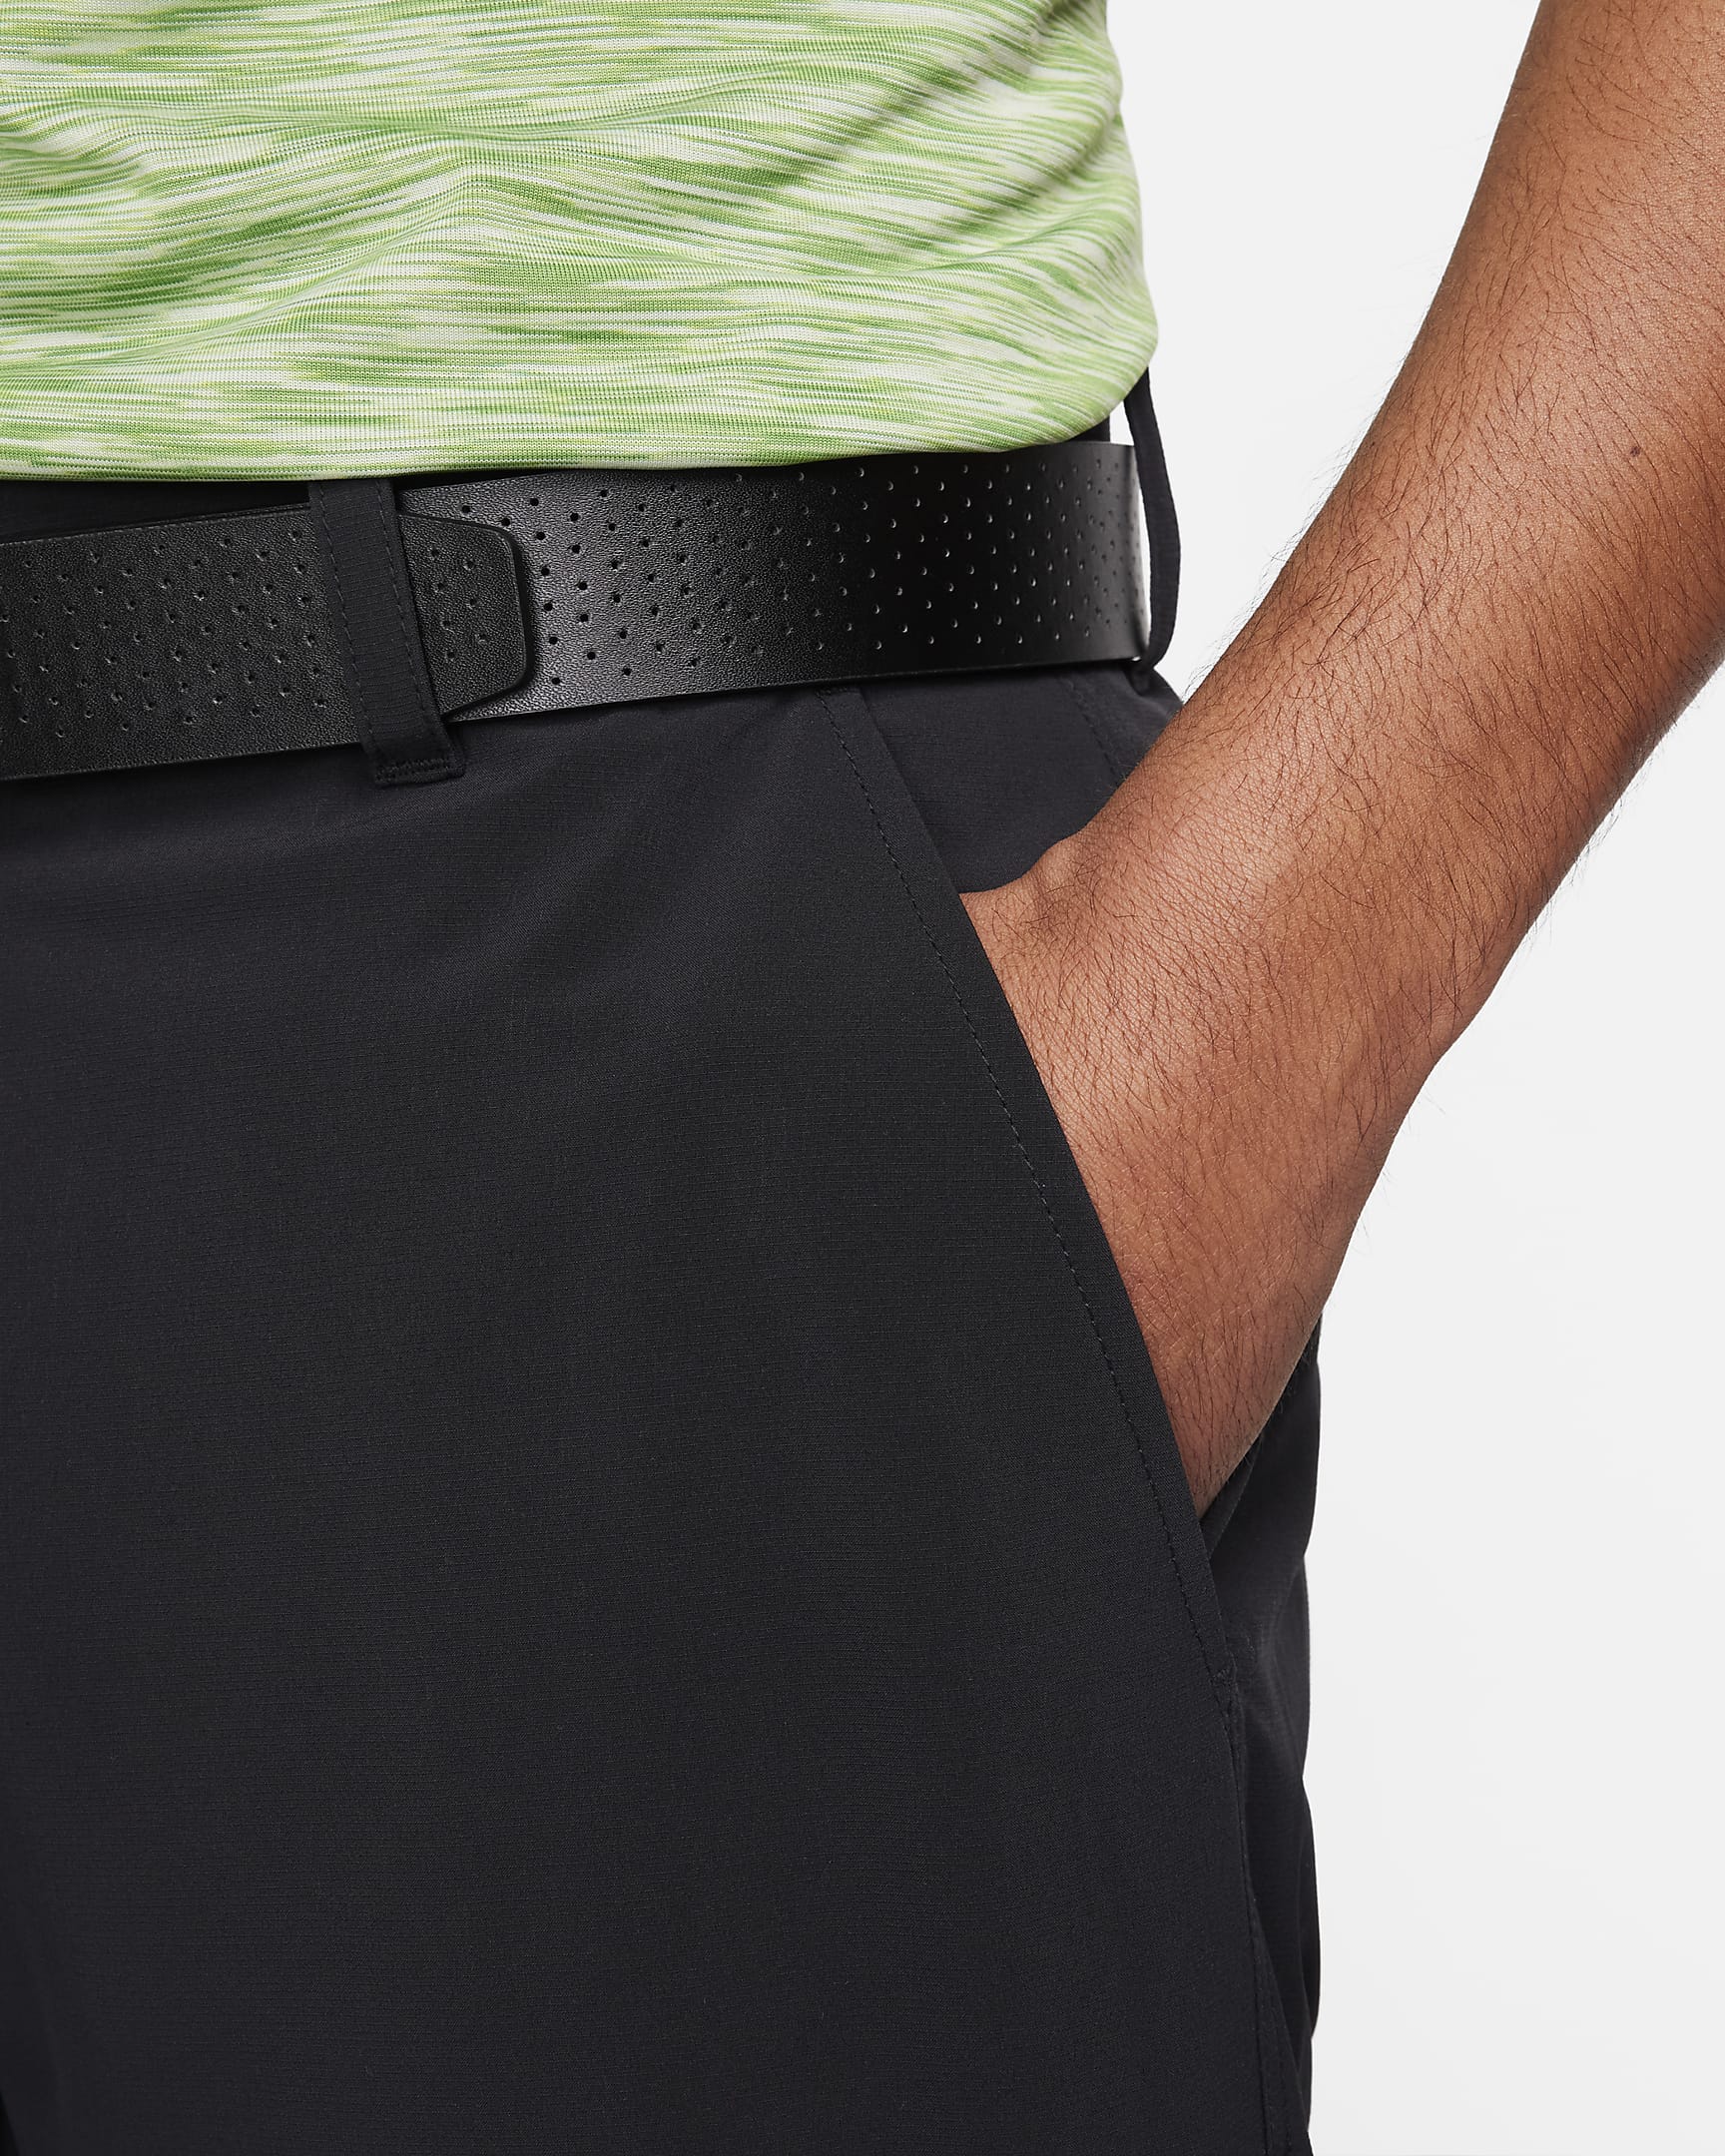 Nike Tour Repel Men's Golf Jogger Trousers - Black/Black